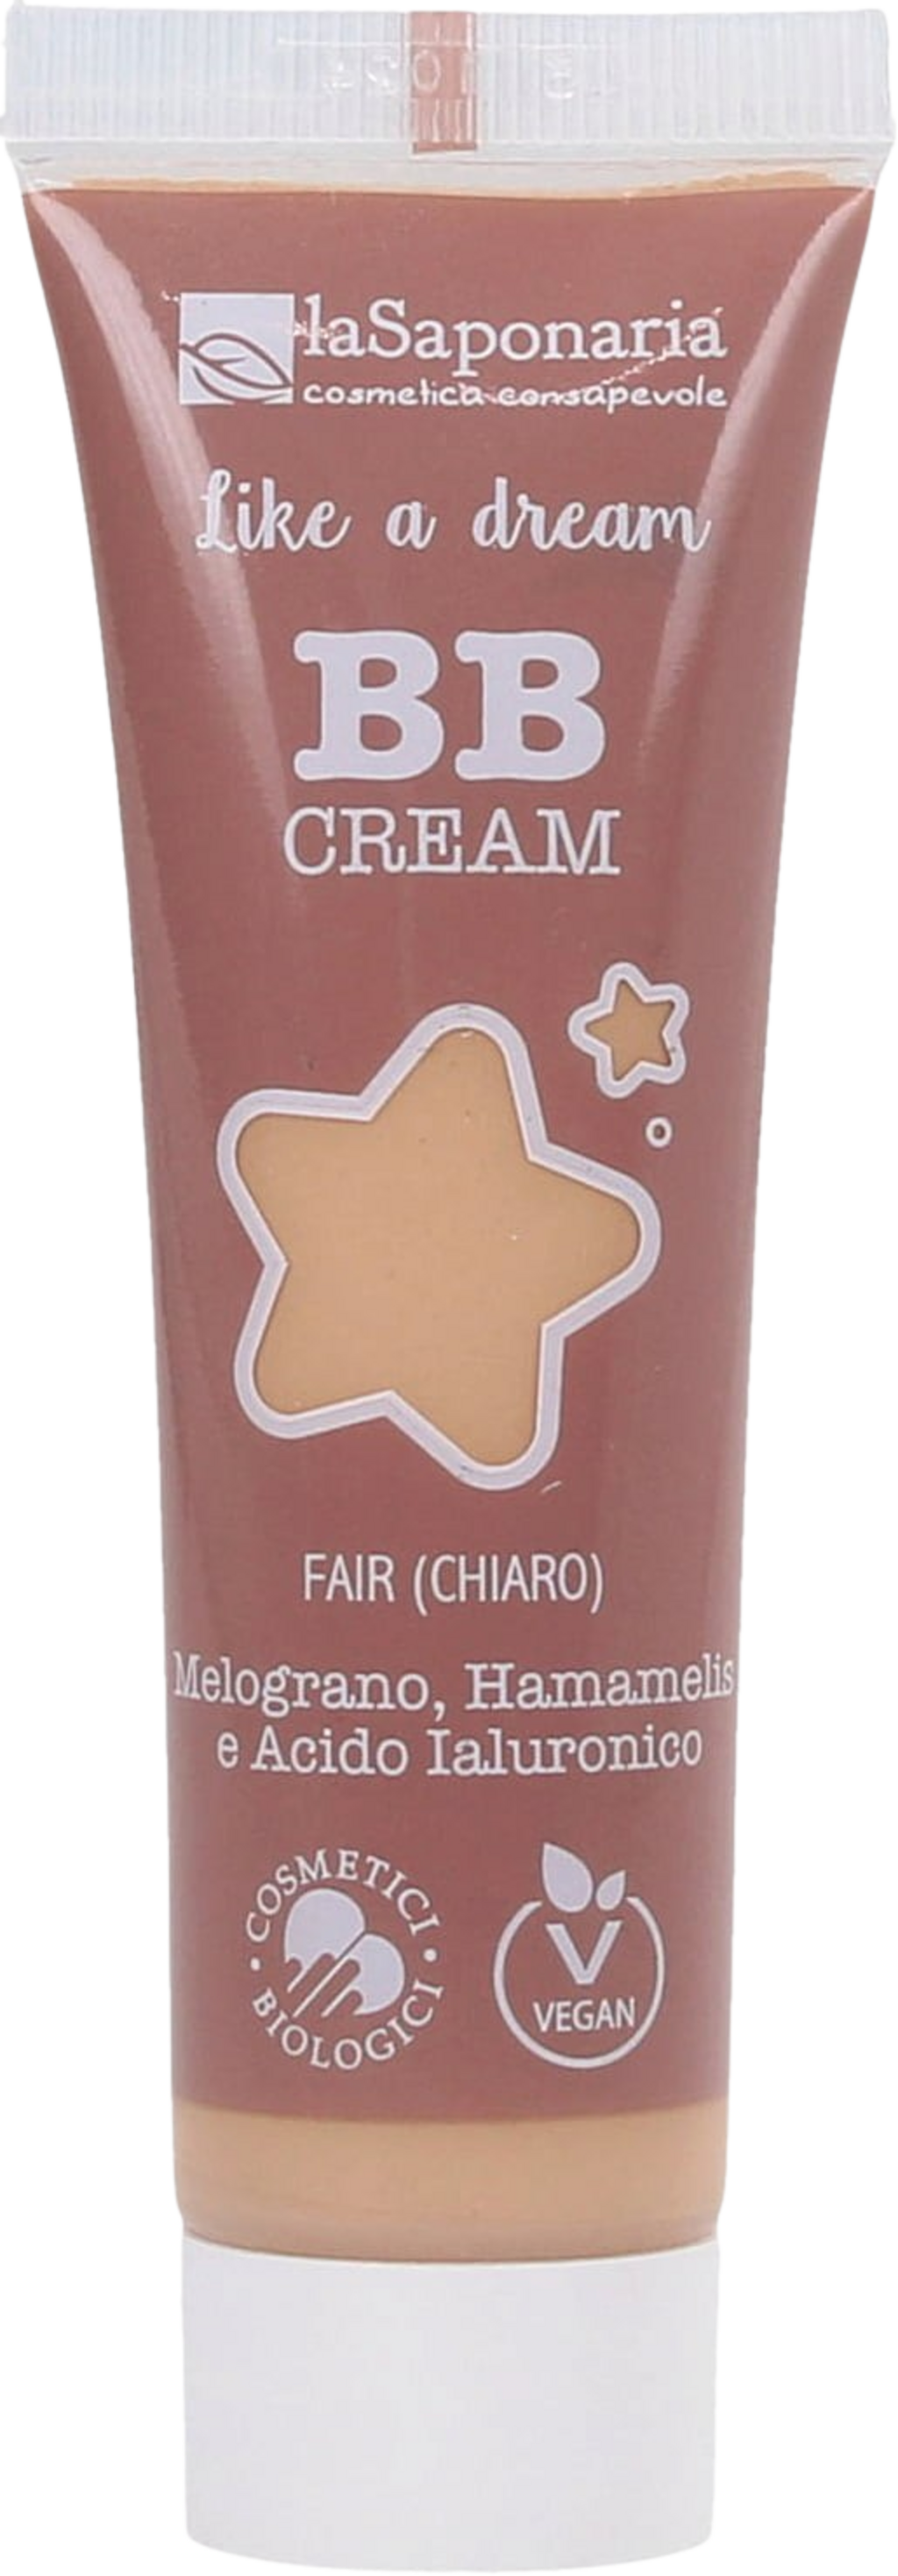 La Saponaria BB Cream Like a Dream - 1 Fair